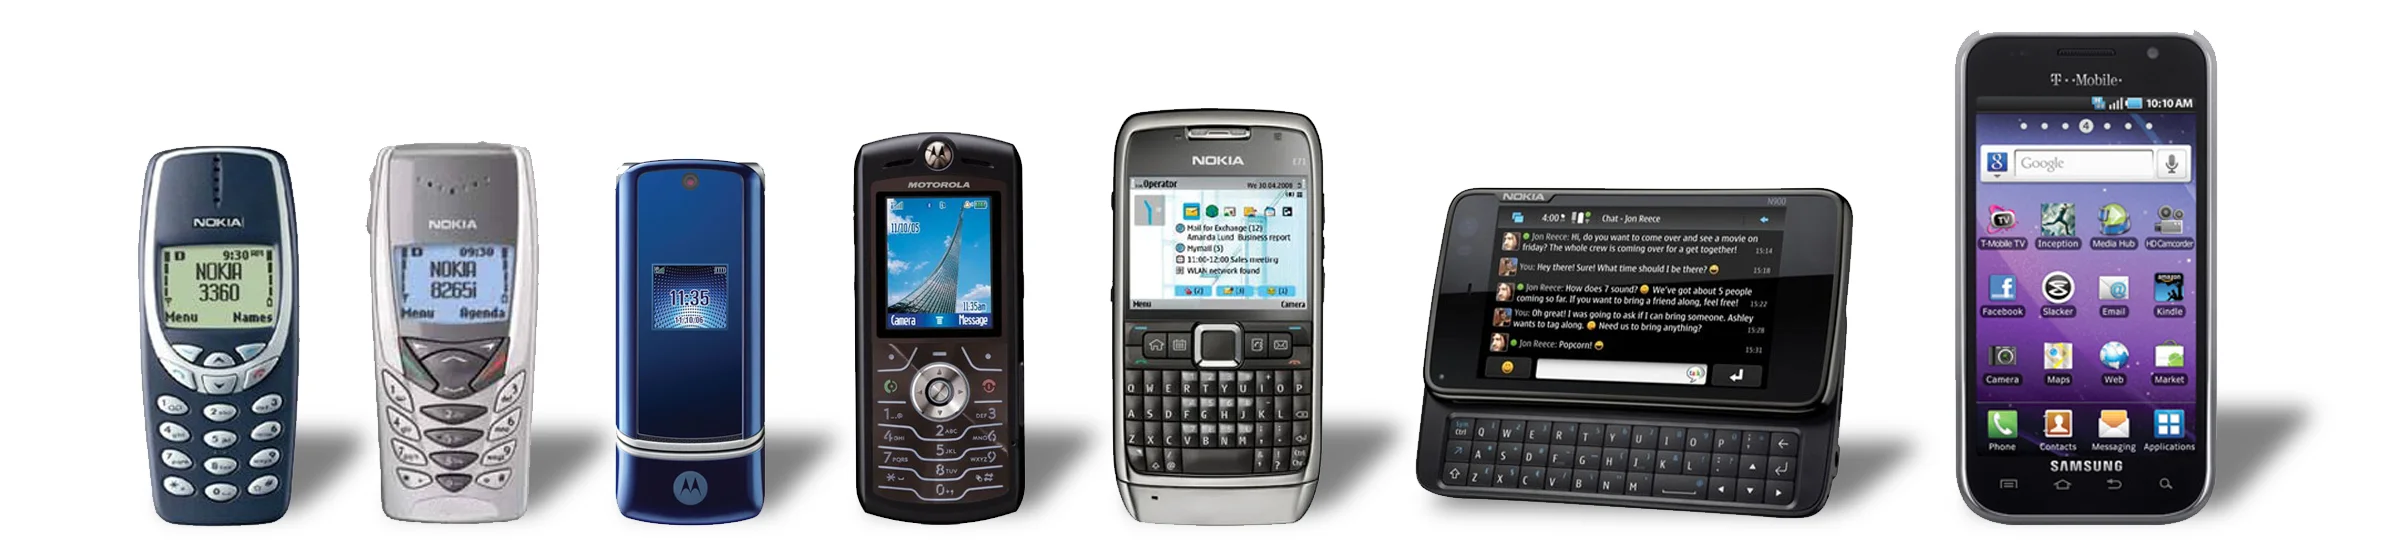 История социальных мобильных игр — от WAP и SMS до современности - фото 2